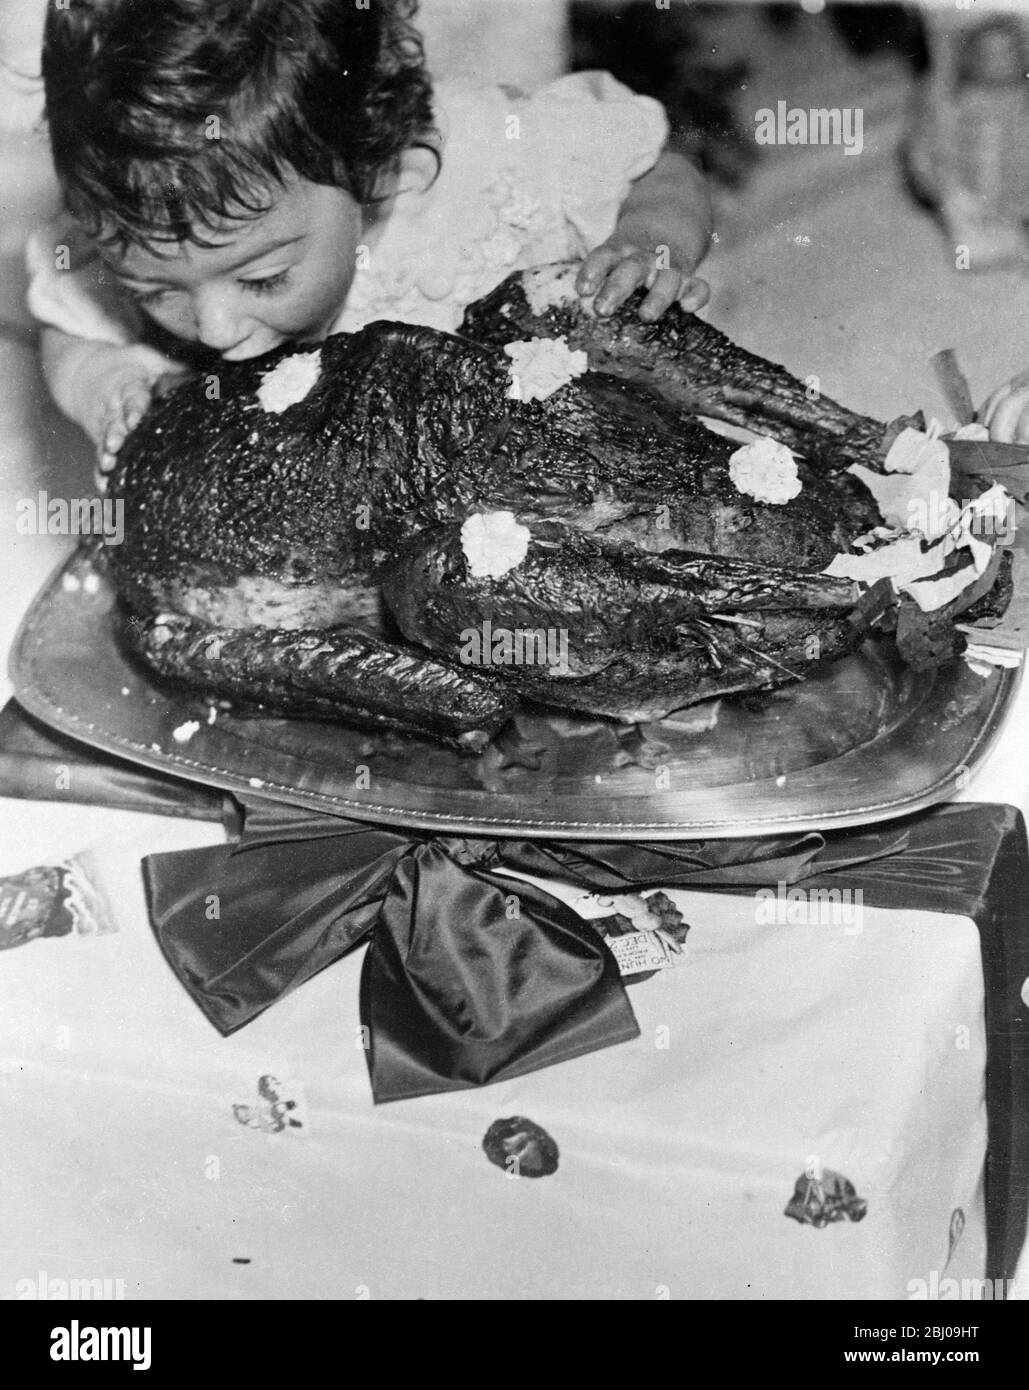 Exklusive Bilder der Dionne Quintuplets Weihnachtsfeier. - Emelie geht allein gegen die türkei vor. - 26. Dezember 1935 Stockfoto